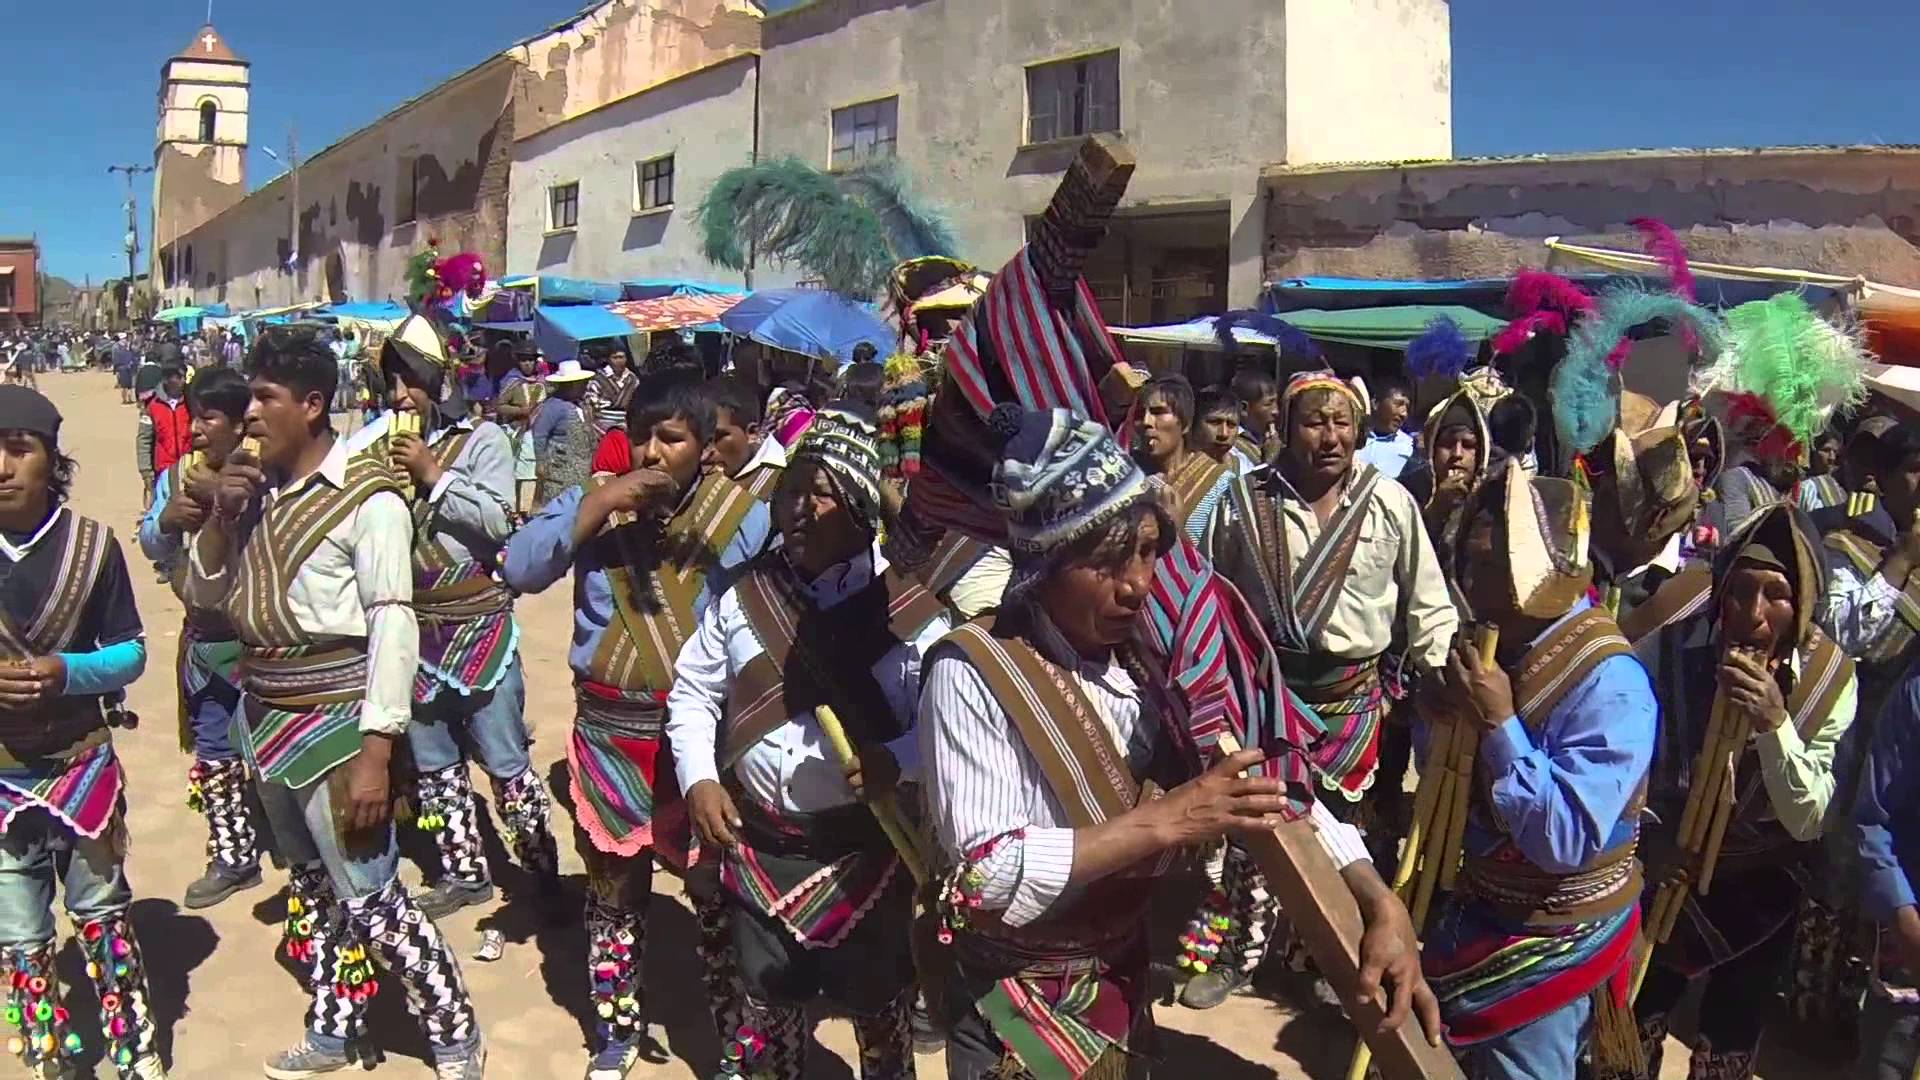 Expresión ritual del “Jula Jula” es declarada como Patrimonio Cultural de Bolivia